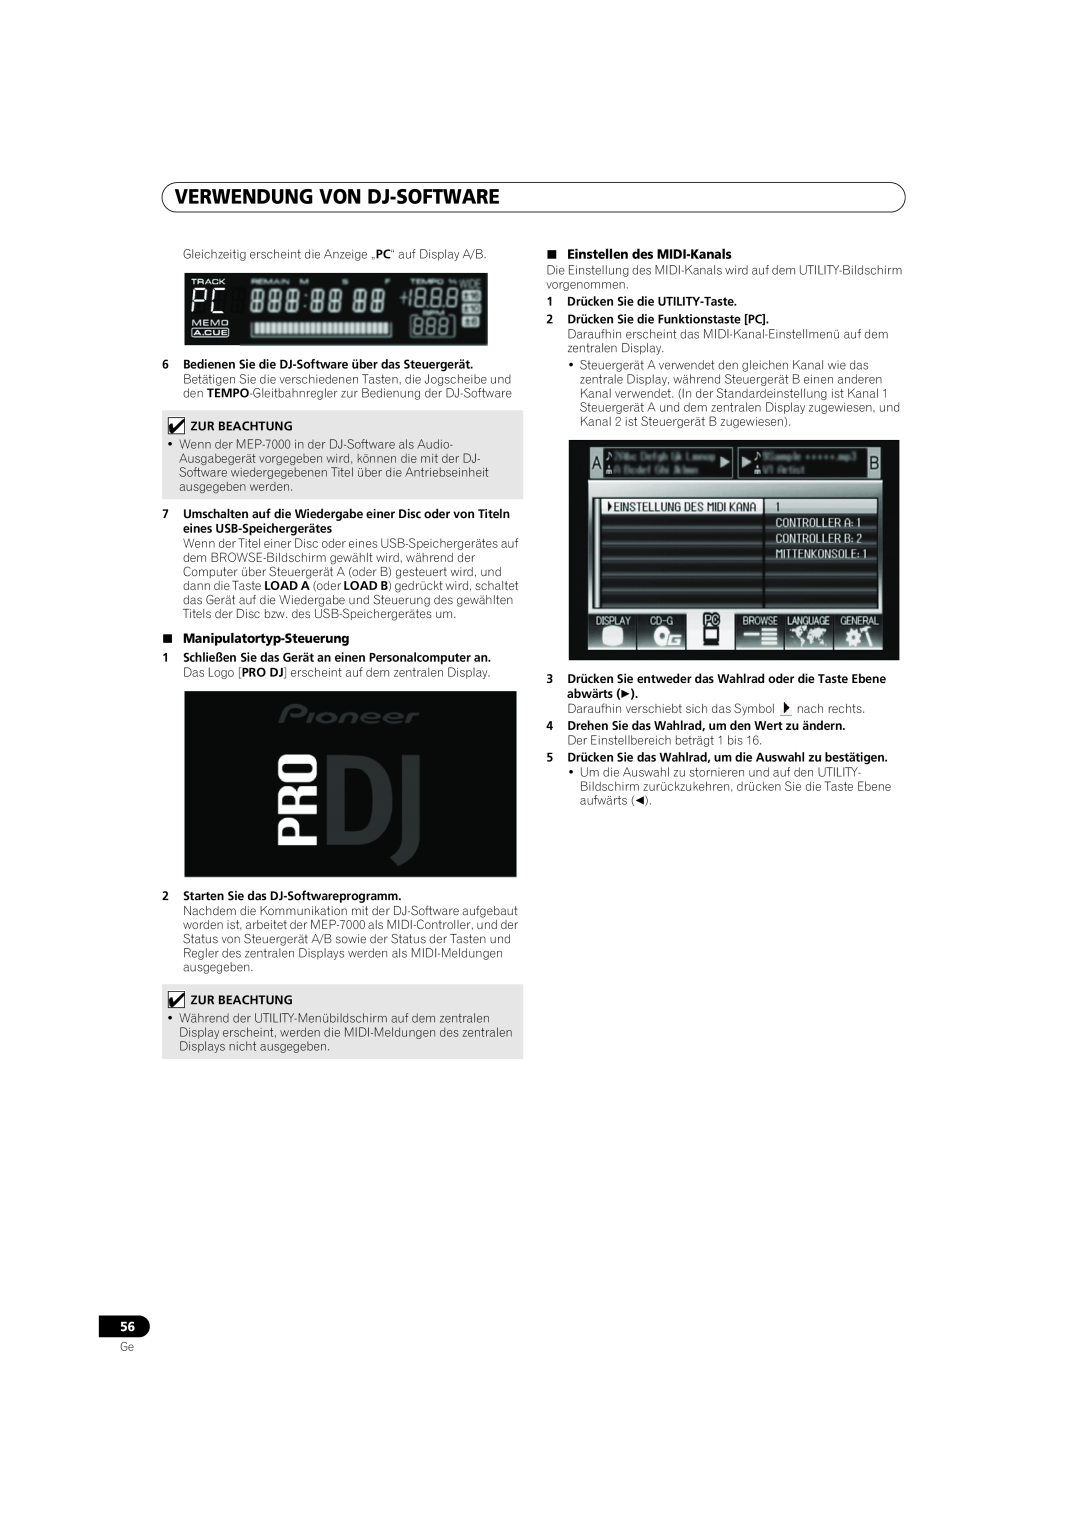 Pioneer MEP-7000 operating instructions Verwendung Von Dj-Software, Manipulatortyp-Steuerung, Einstellen des MIDI-Kanals 